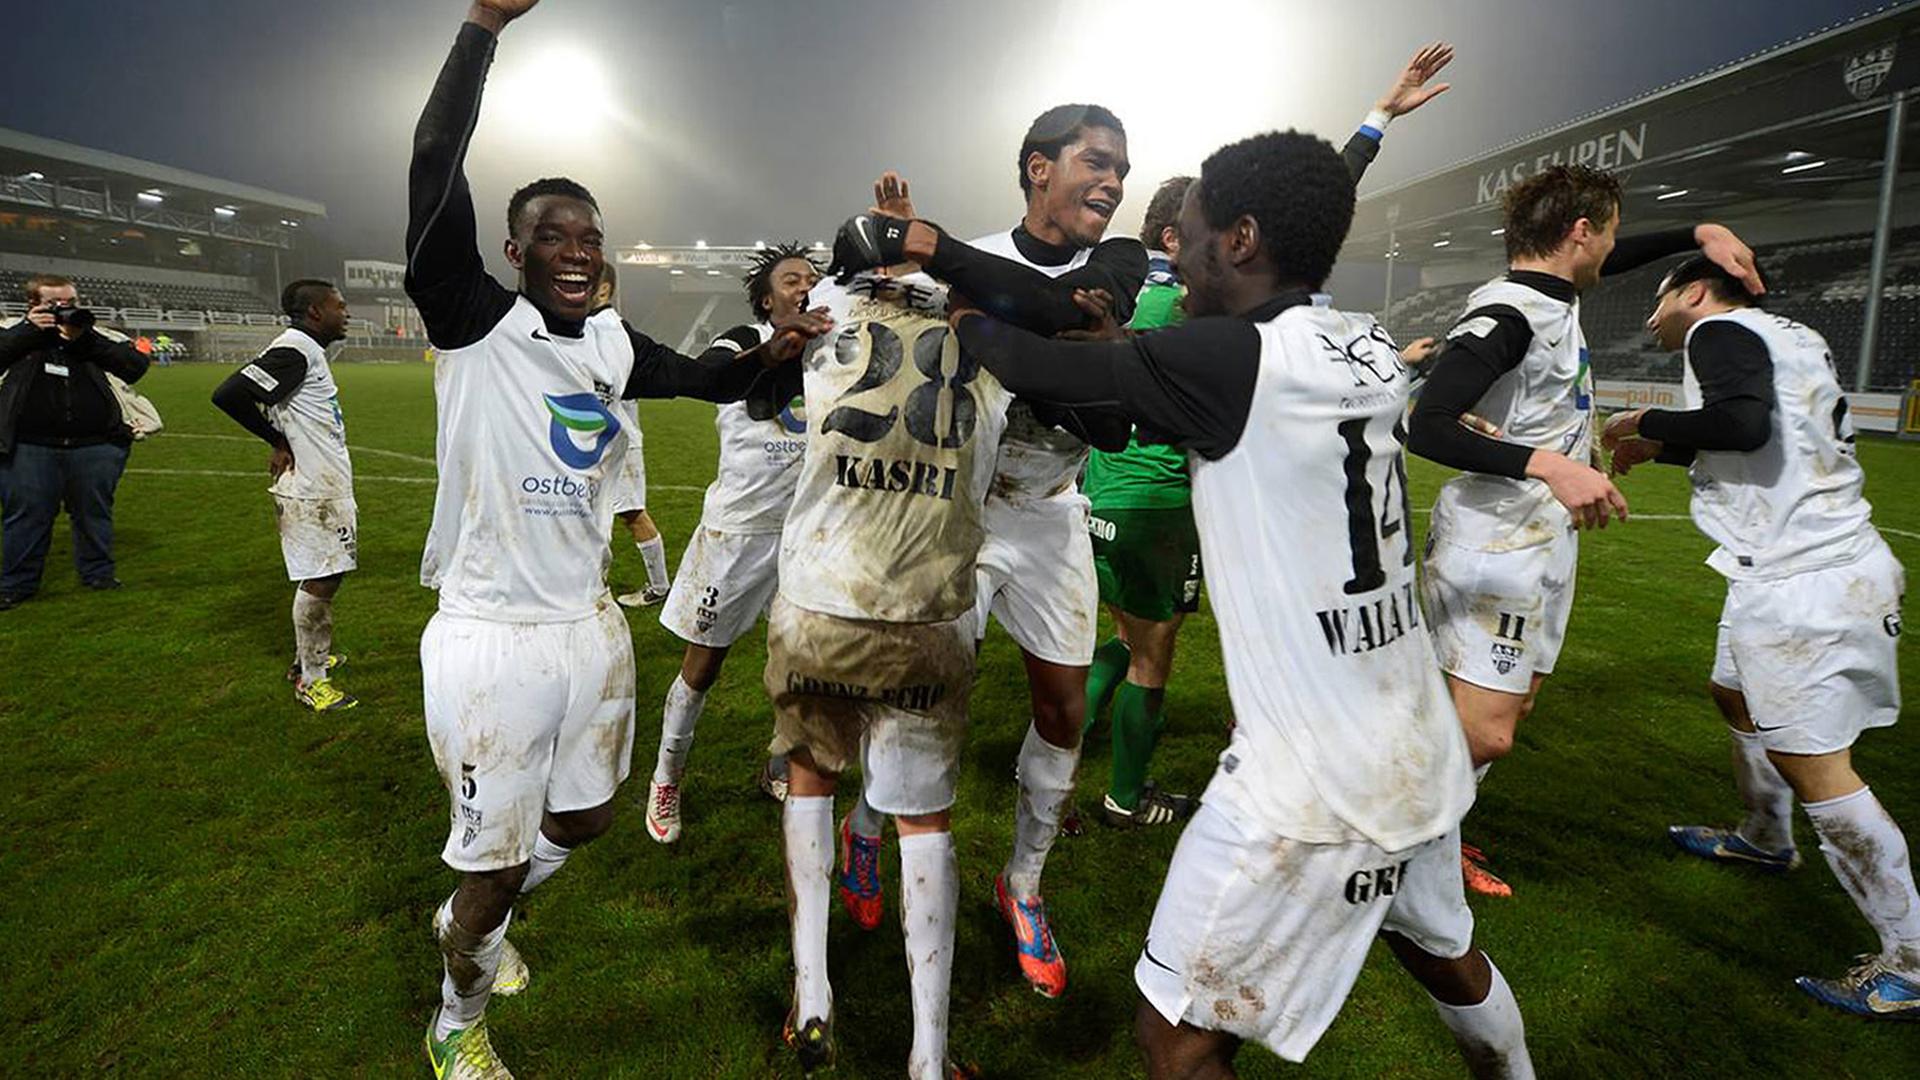 Spieler des von Katar übernommenen belgischen Zweitligaklubs KAS Eupen bejubeln ihren Sieg am 6.1.2013 gegen Lommel United